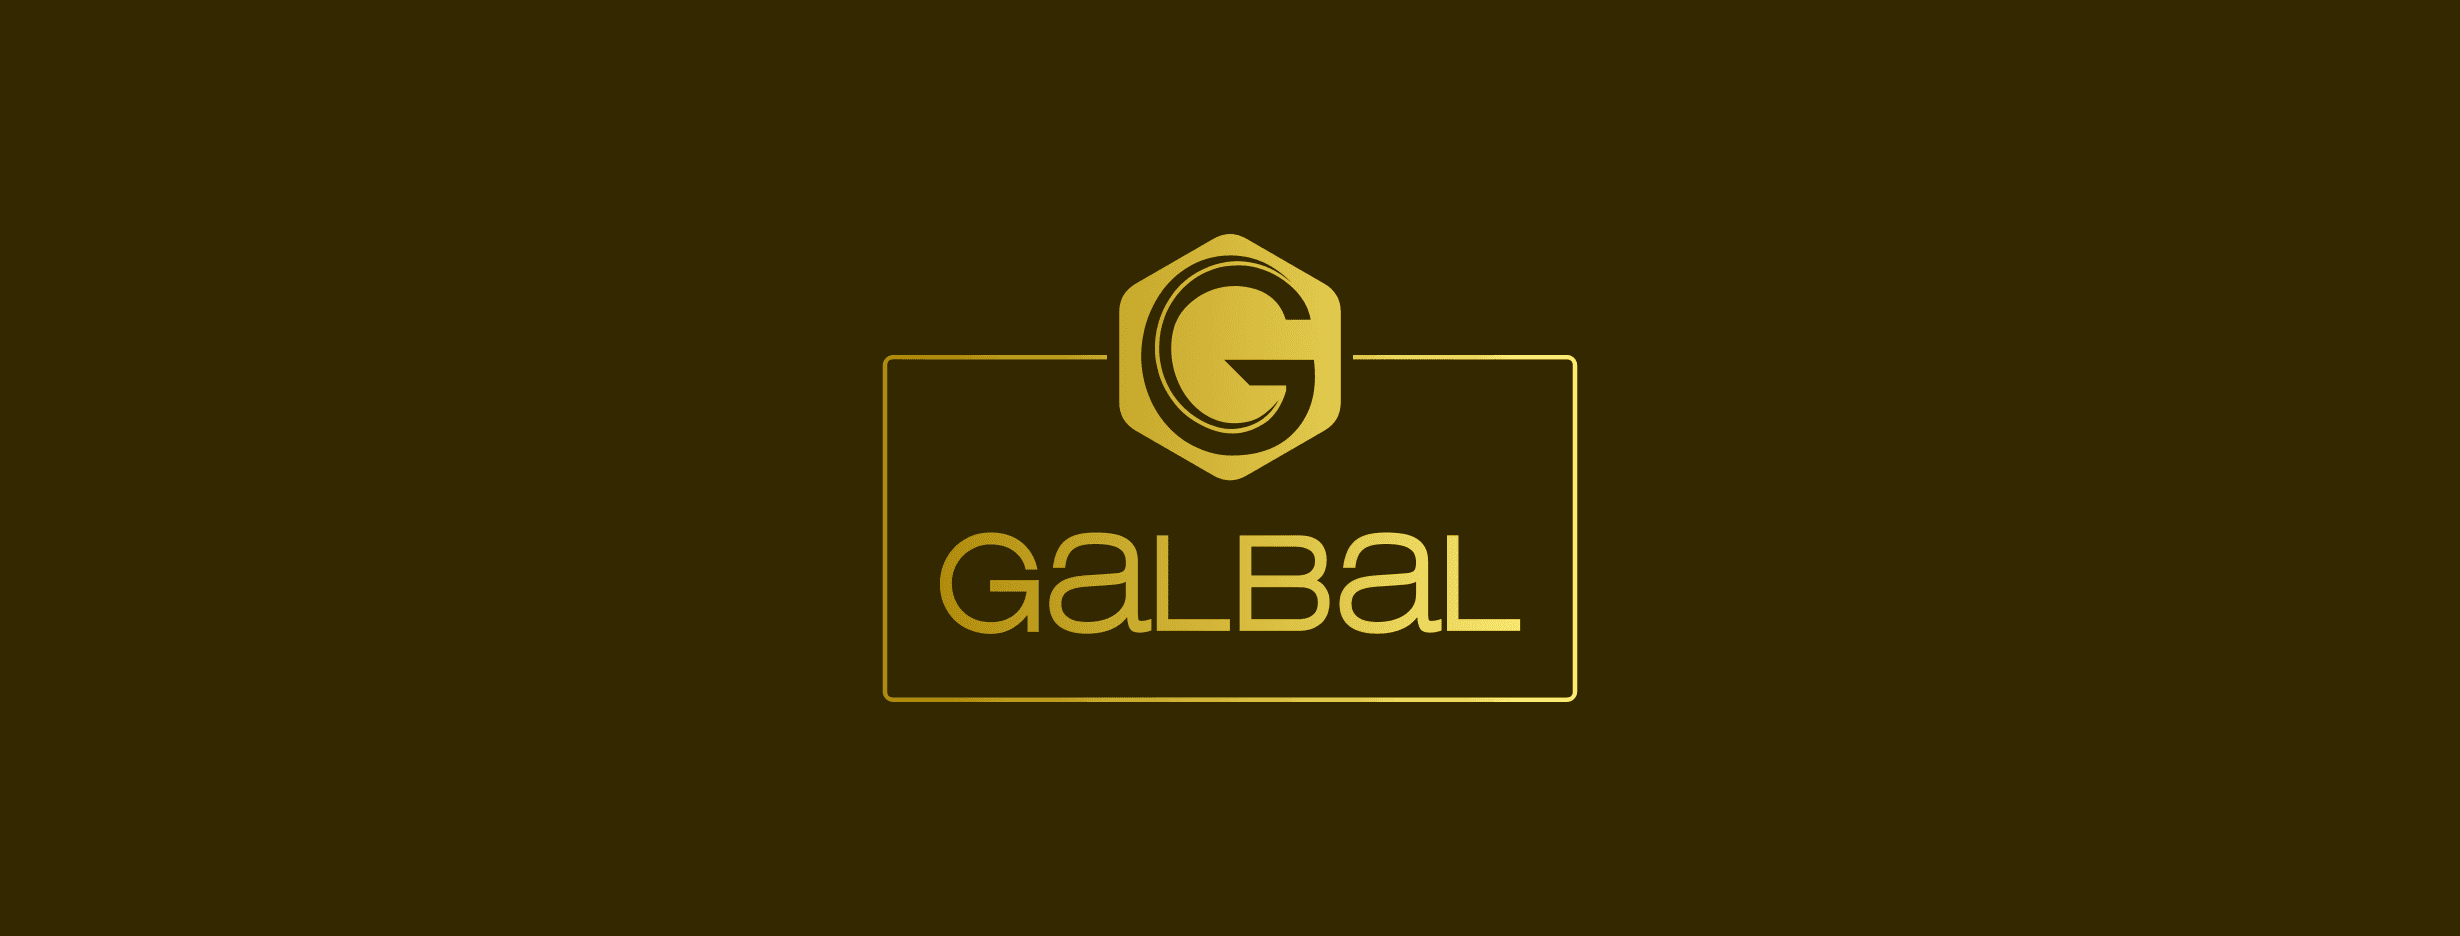 GALBAL DAWID PODLEŚ-logo